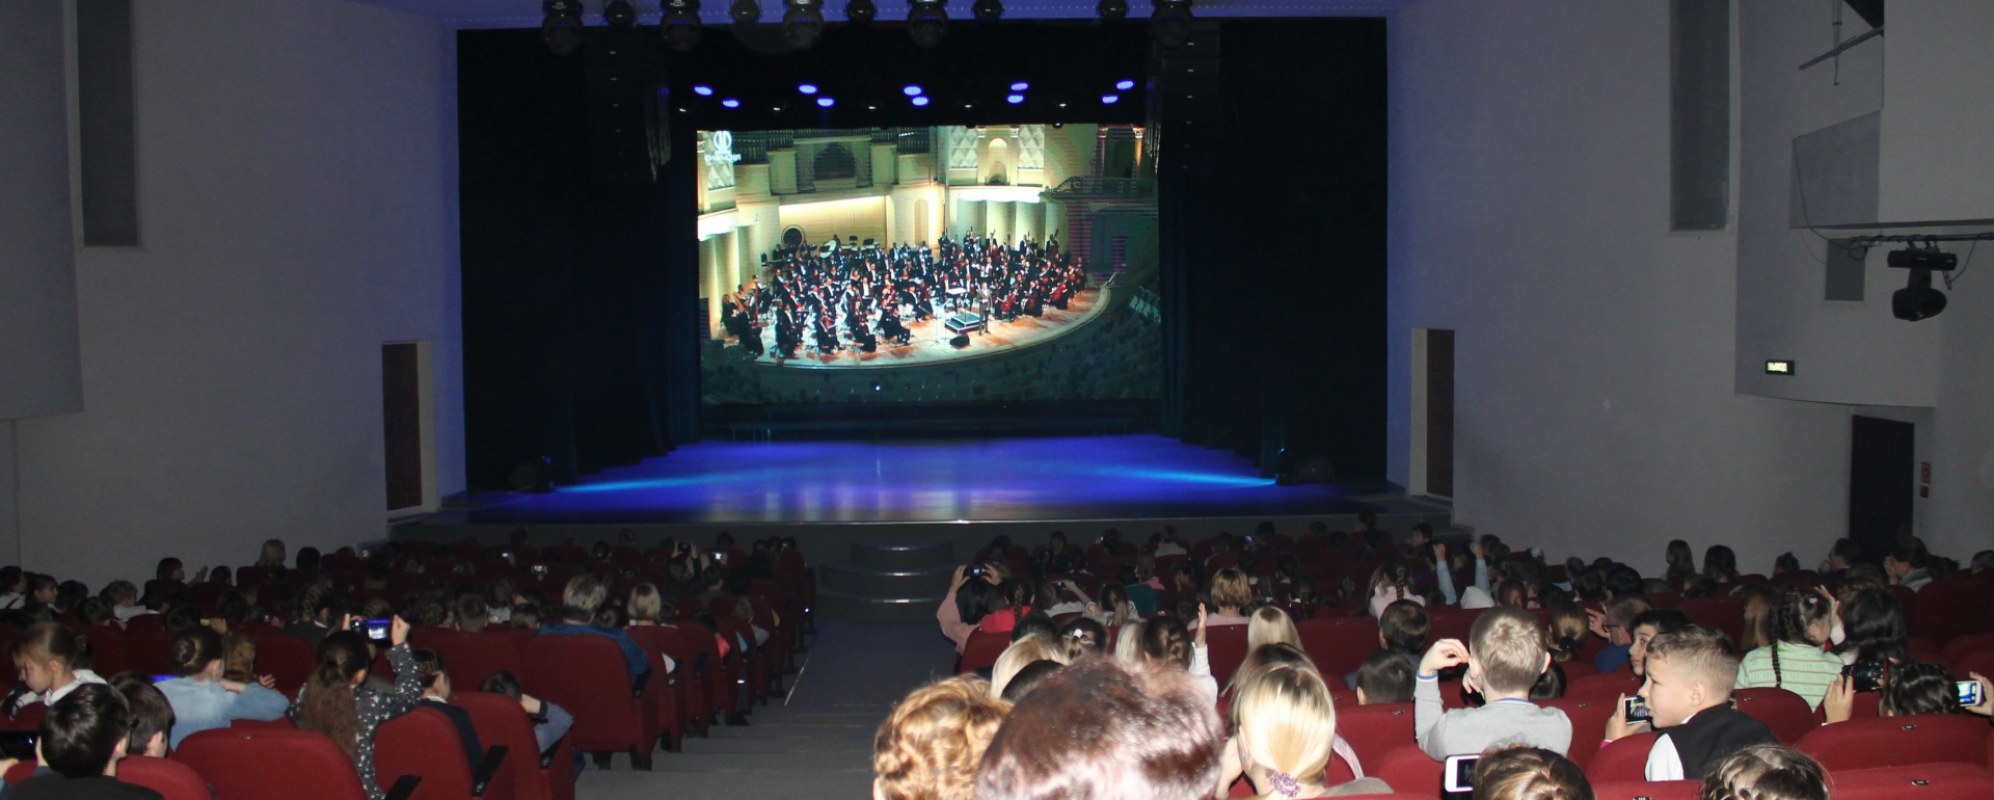 Фотографии концертного зала Концертный зал Усинского дворца культуры